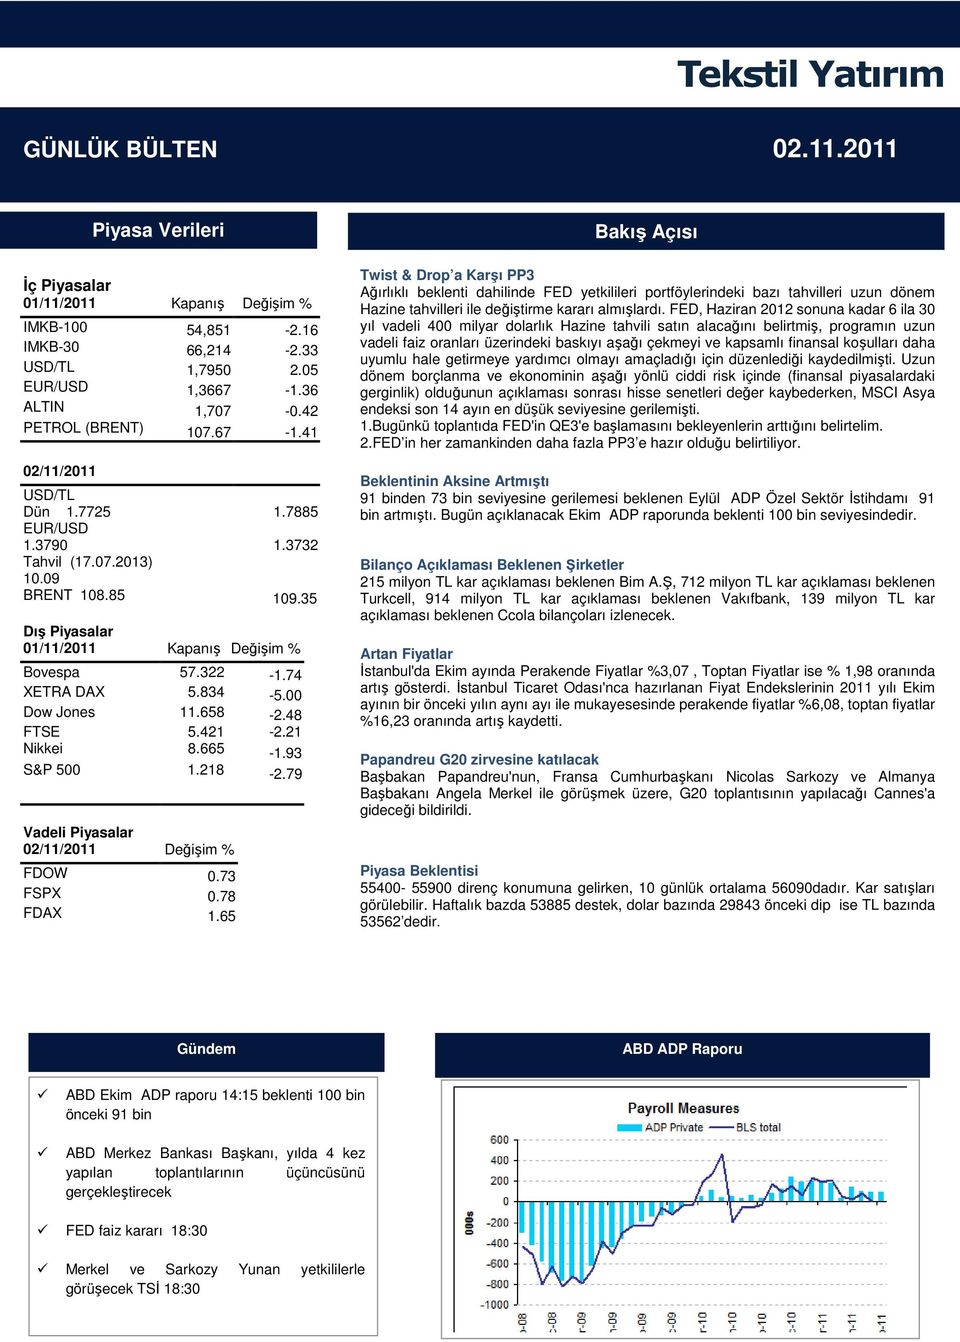 21 Nikkei 8.665-1.93 S&P 500 1.218-2.79 Vadeli Piyasalar 02/11/2011 Değişim % FDOW 0.73 FSPX 0.78 FDAX 1.